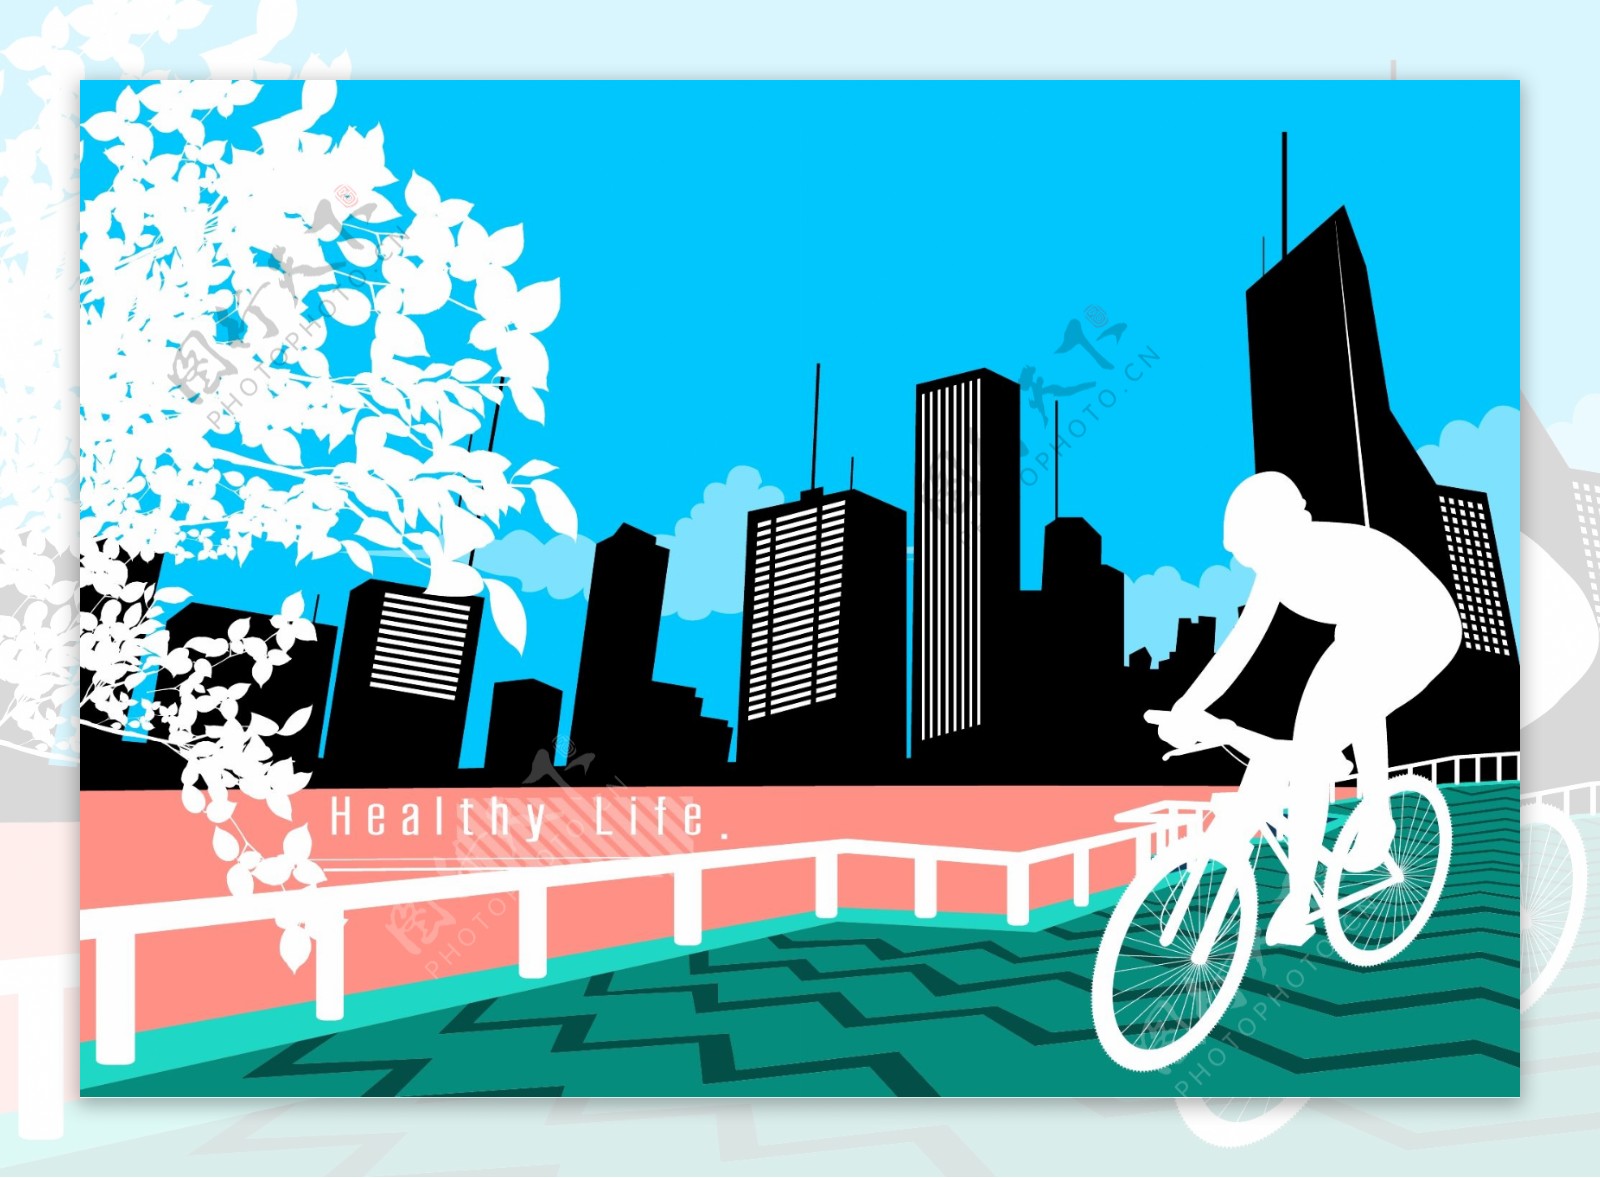 骑自行车的人物与城市建筑物剪影矢量素材